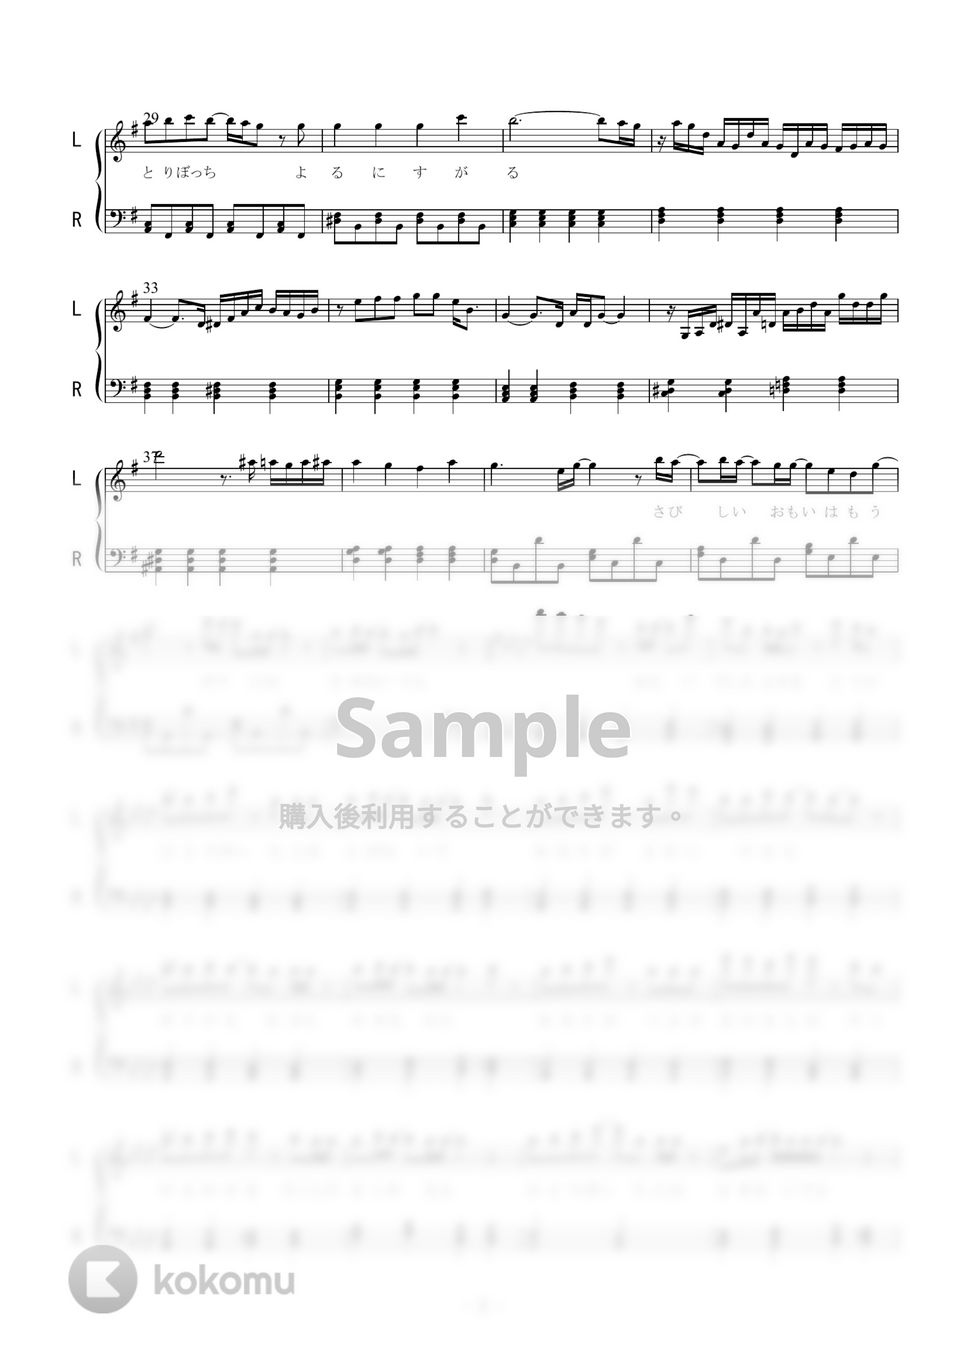 yama - Oz. (ピアノソロ) by 二次元楽譜製作所